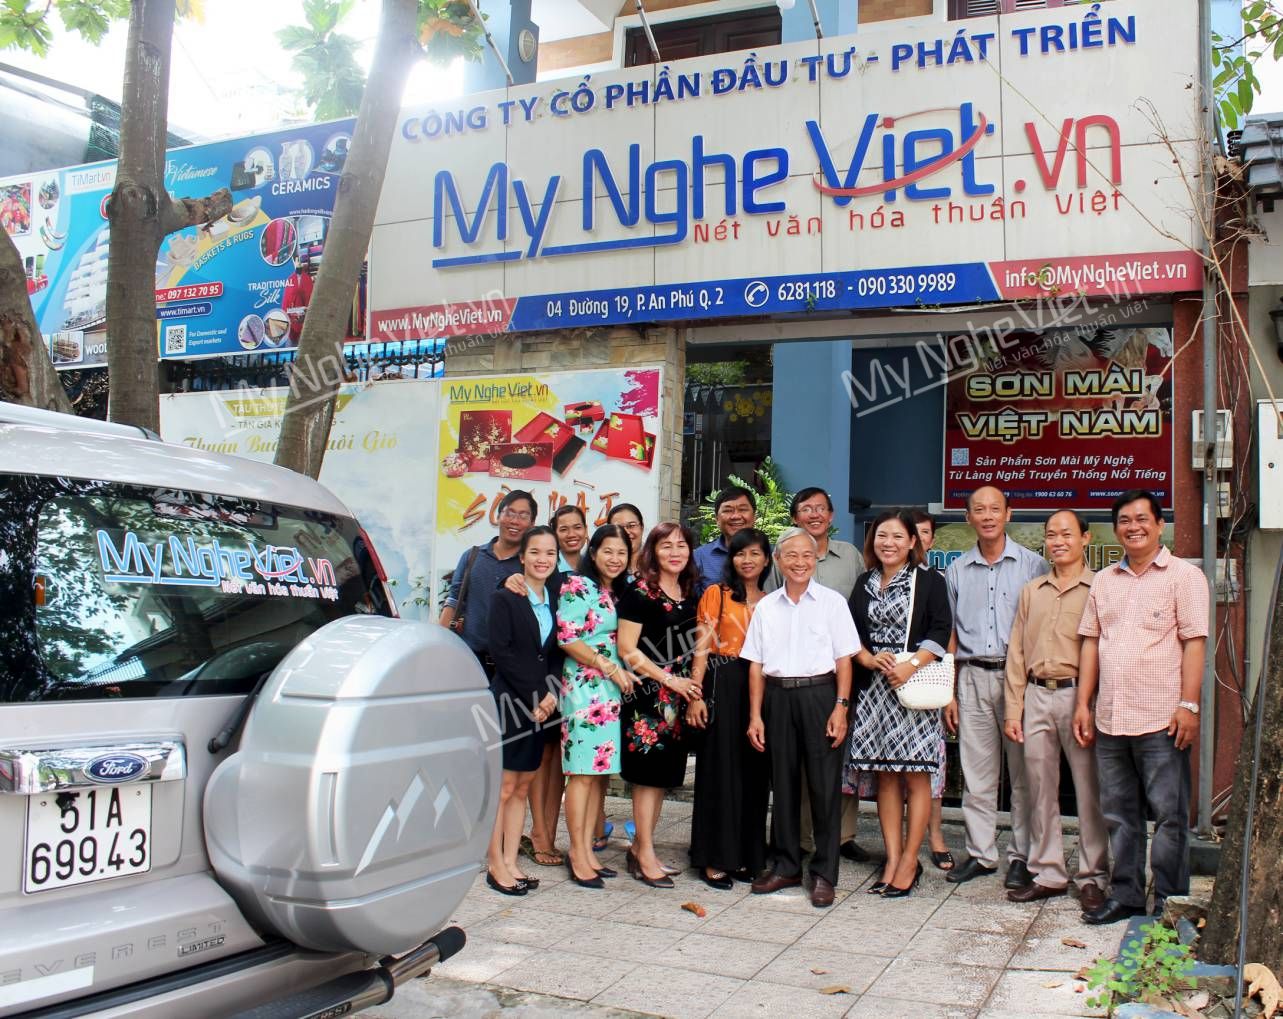 Cuộc họp thường niên của ban điều hành Hiệp hội sơn mài tại Mỹ Nghệ Việt